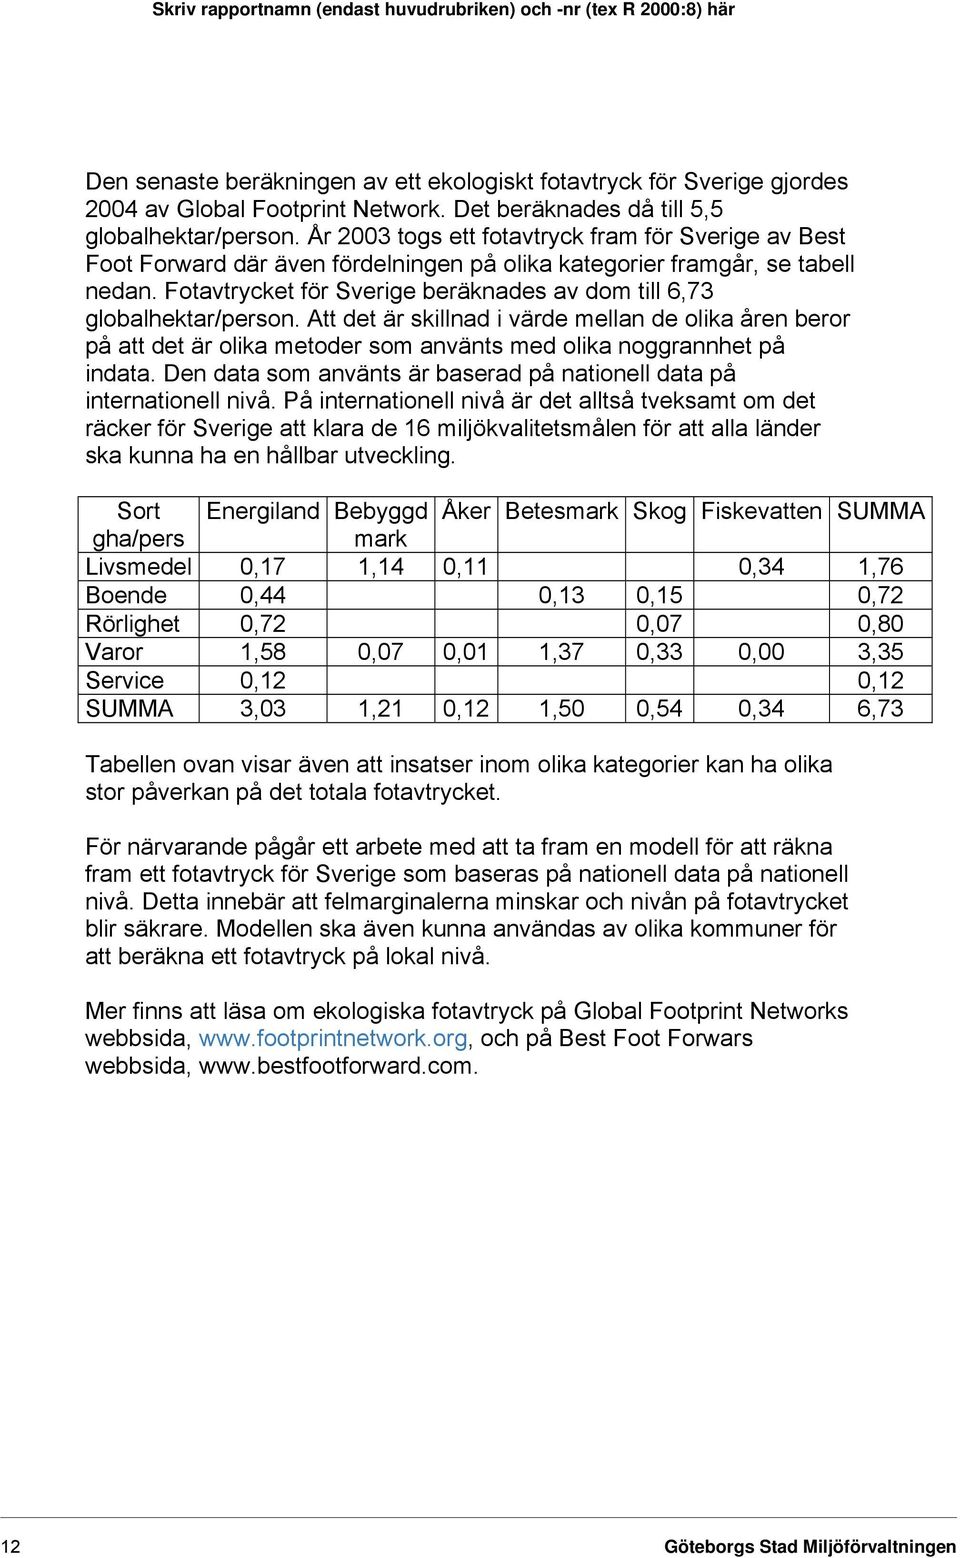 Fotavtrycket för Sverige beräknades av dom till 6,73 globalhektar/person.